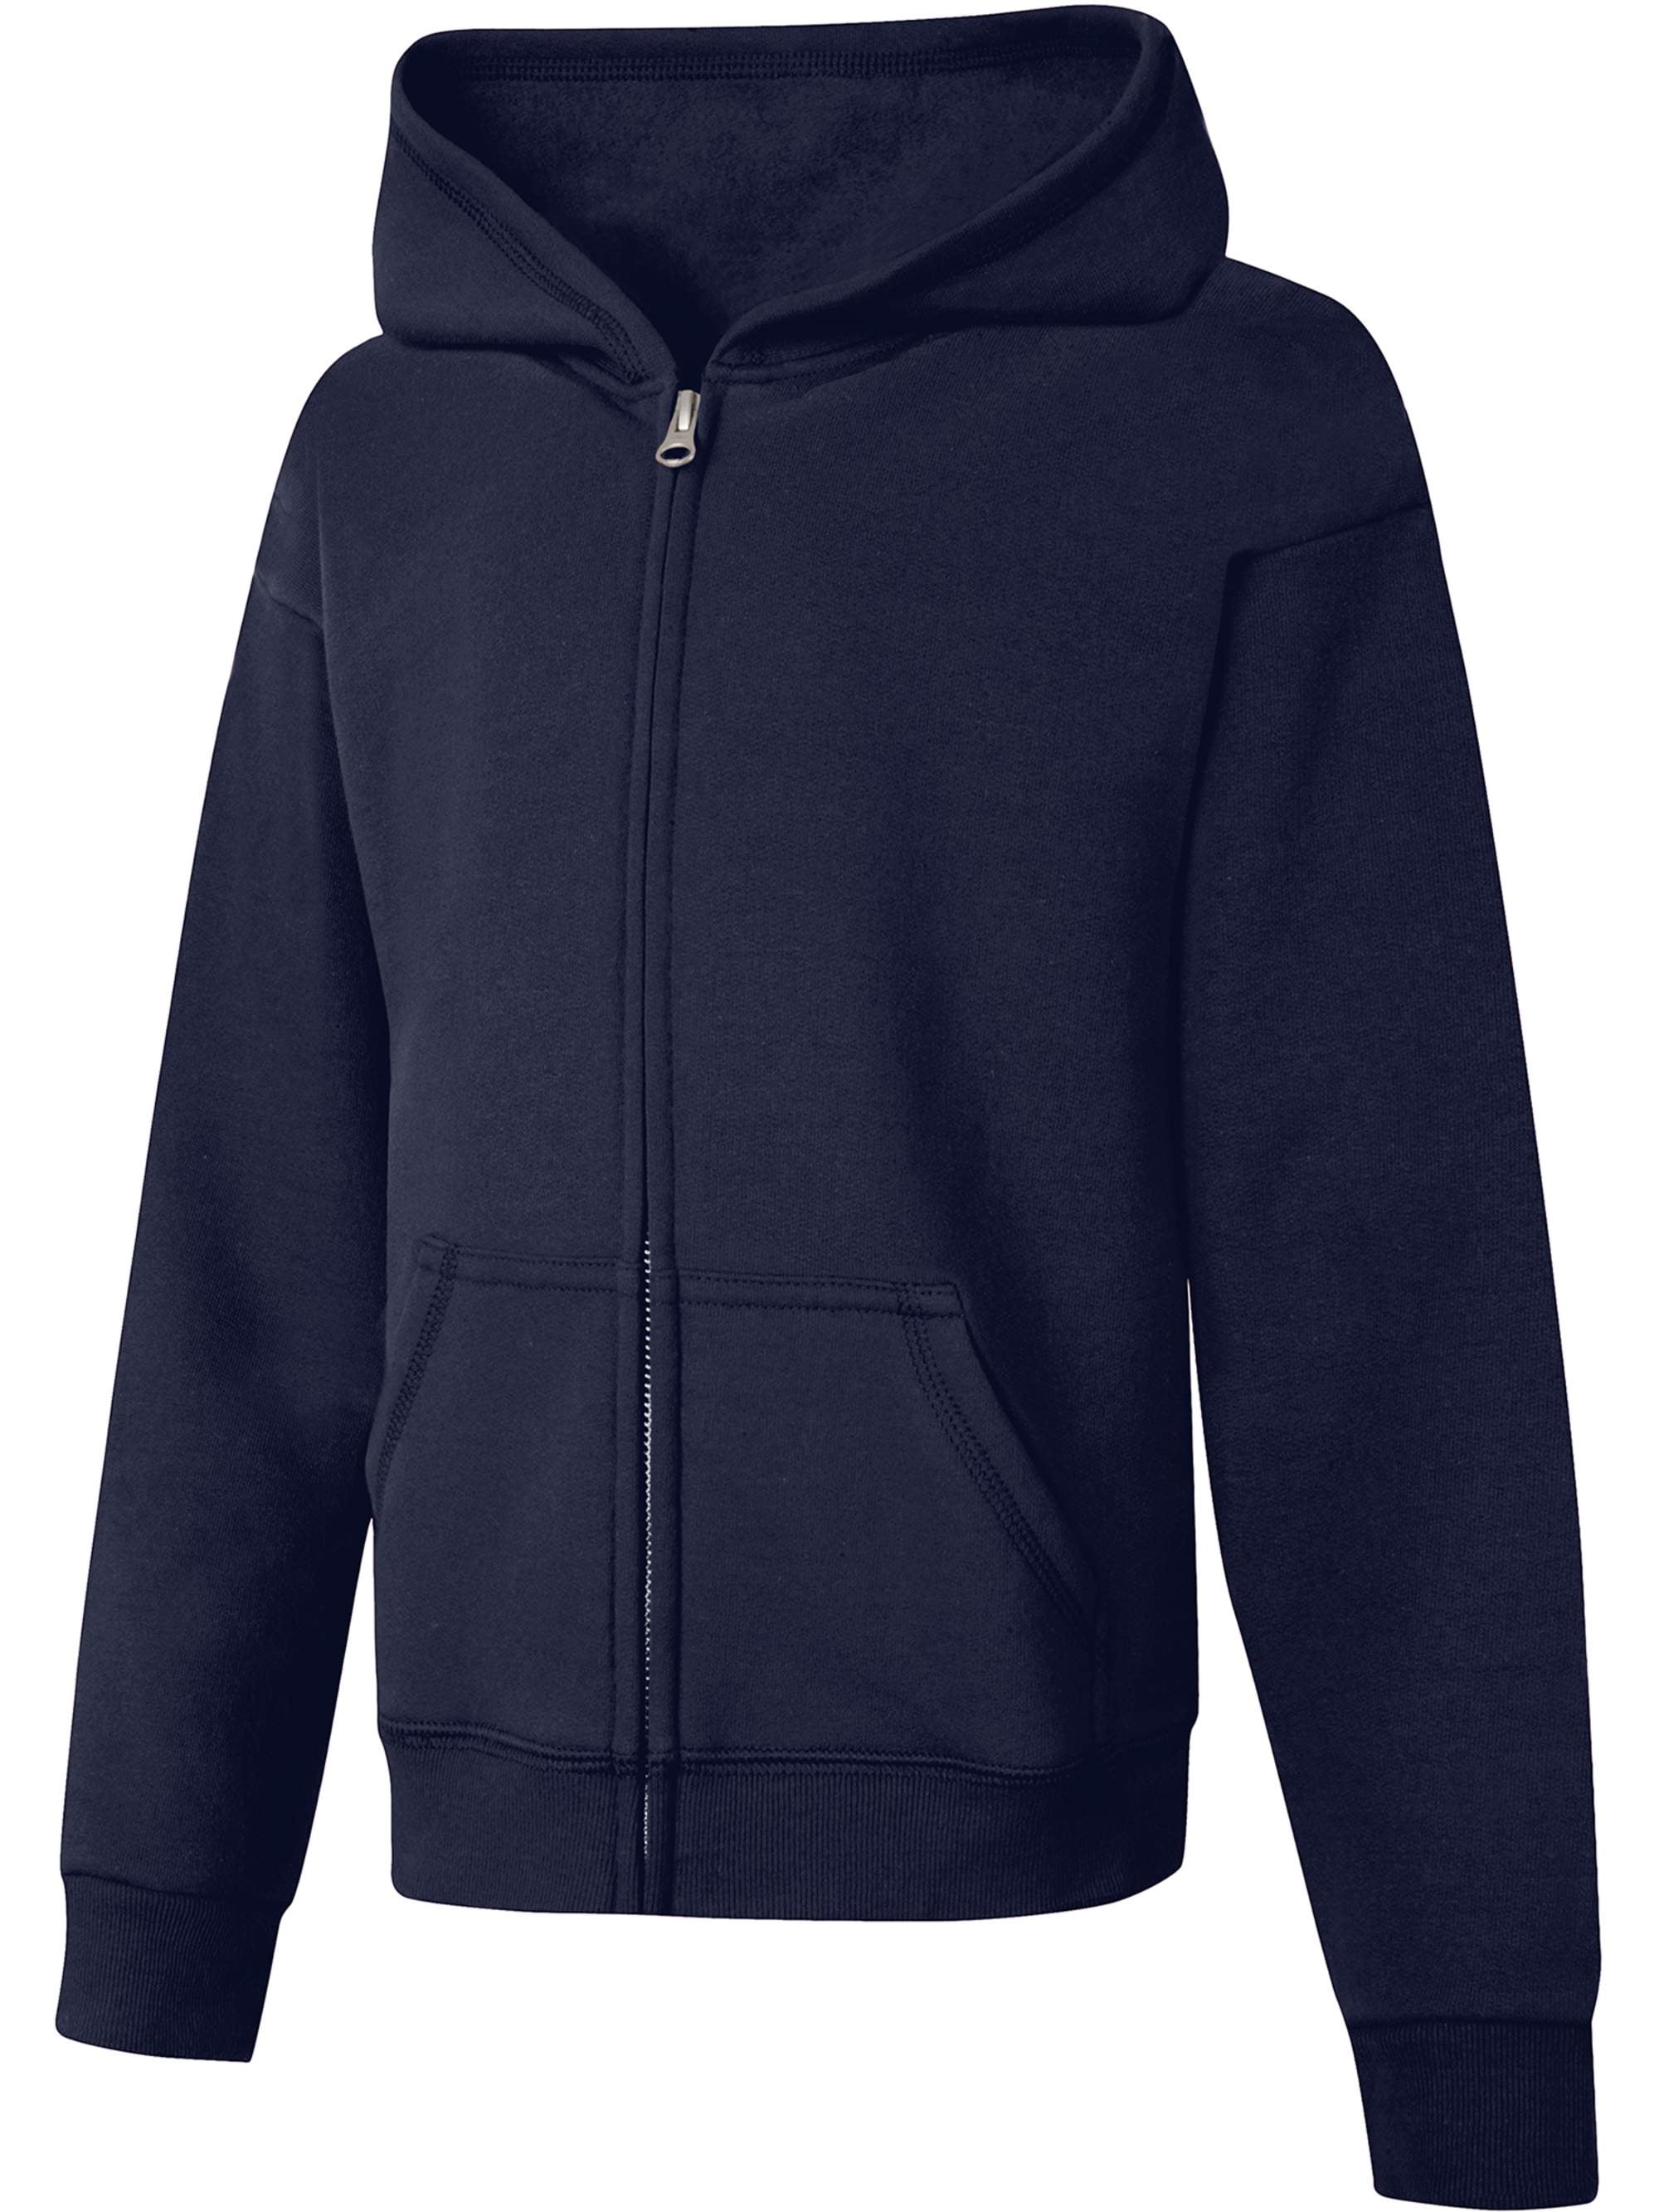 Reebok Girls’ Fashion Hoodie Sweatshirt Fleece Pullover or Zip Hoodie Sweatshirt 7-16